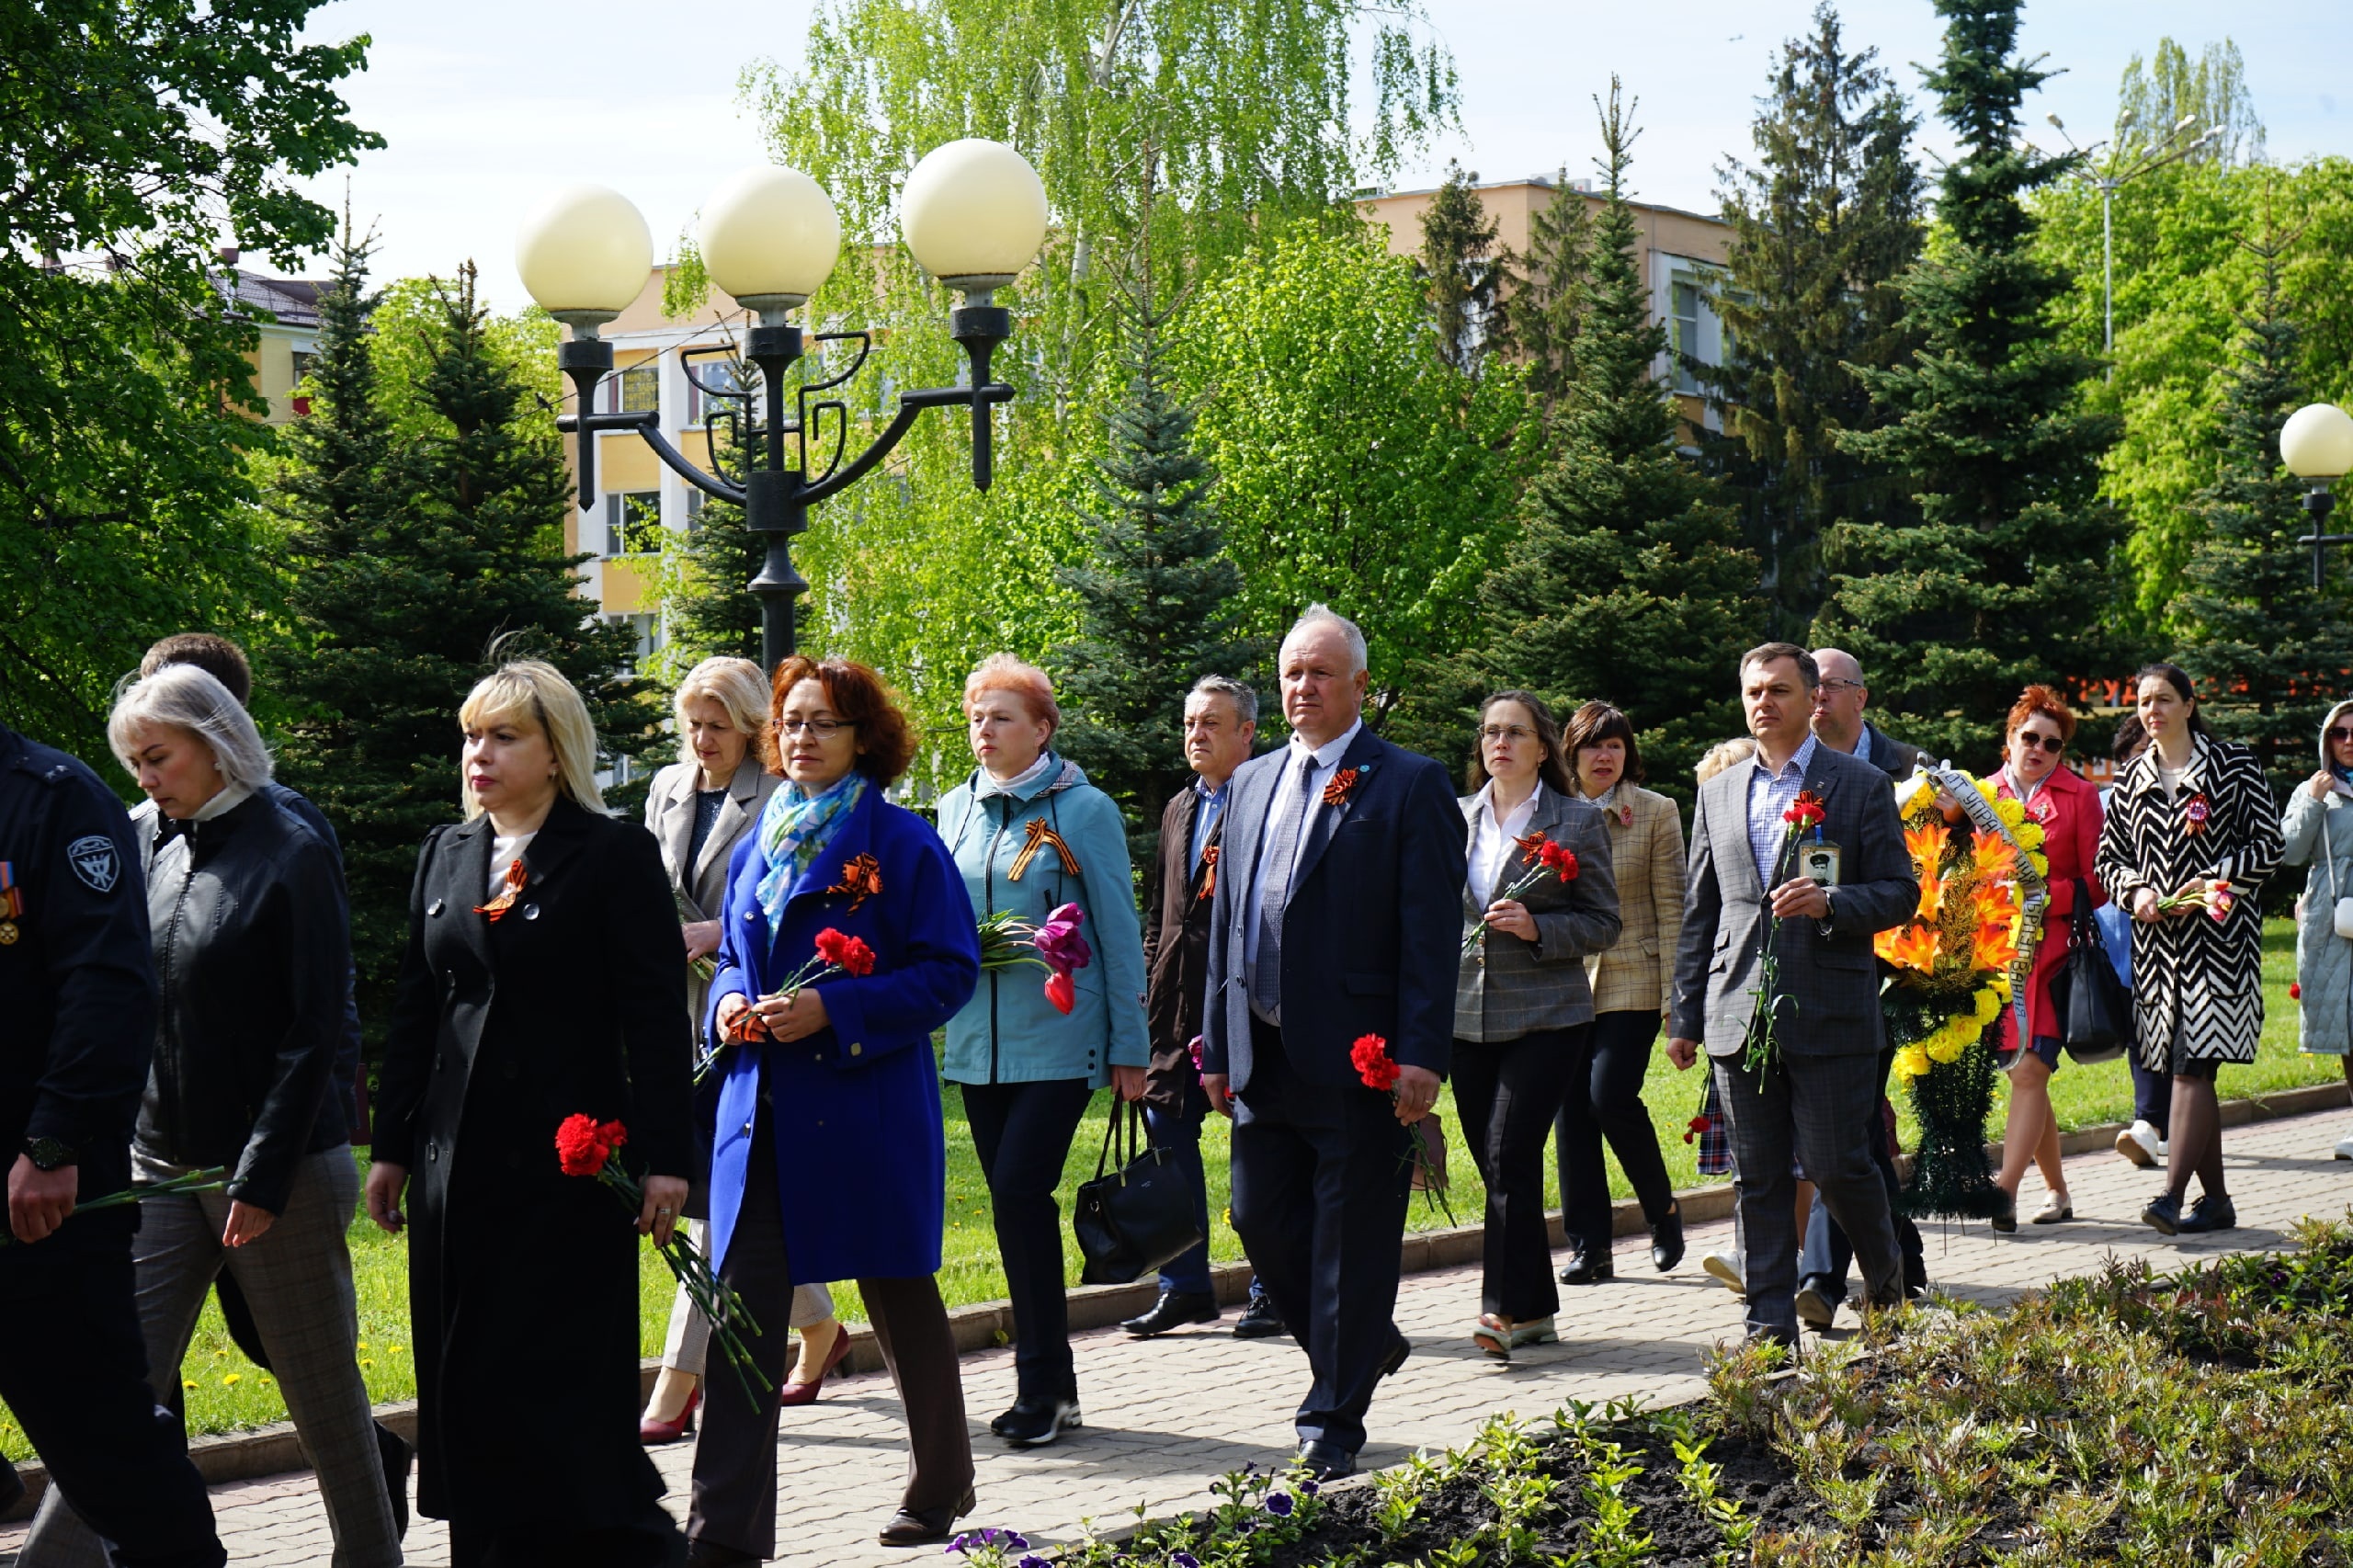 Сегодня в 78-ую годовщину Победы в Великой Отечественной войне состоялось торжественное возложение цветов к братской могиле на центральной площади города Строитель.